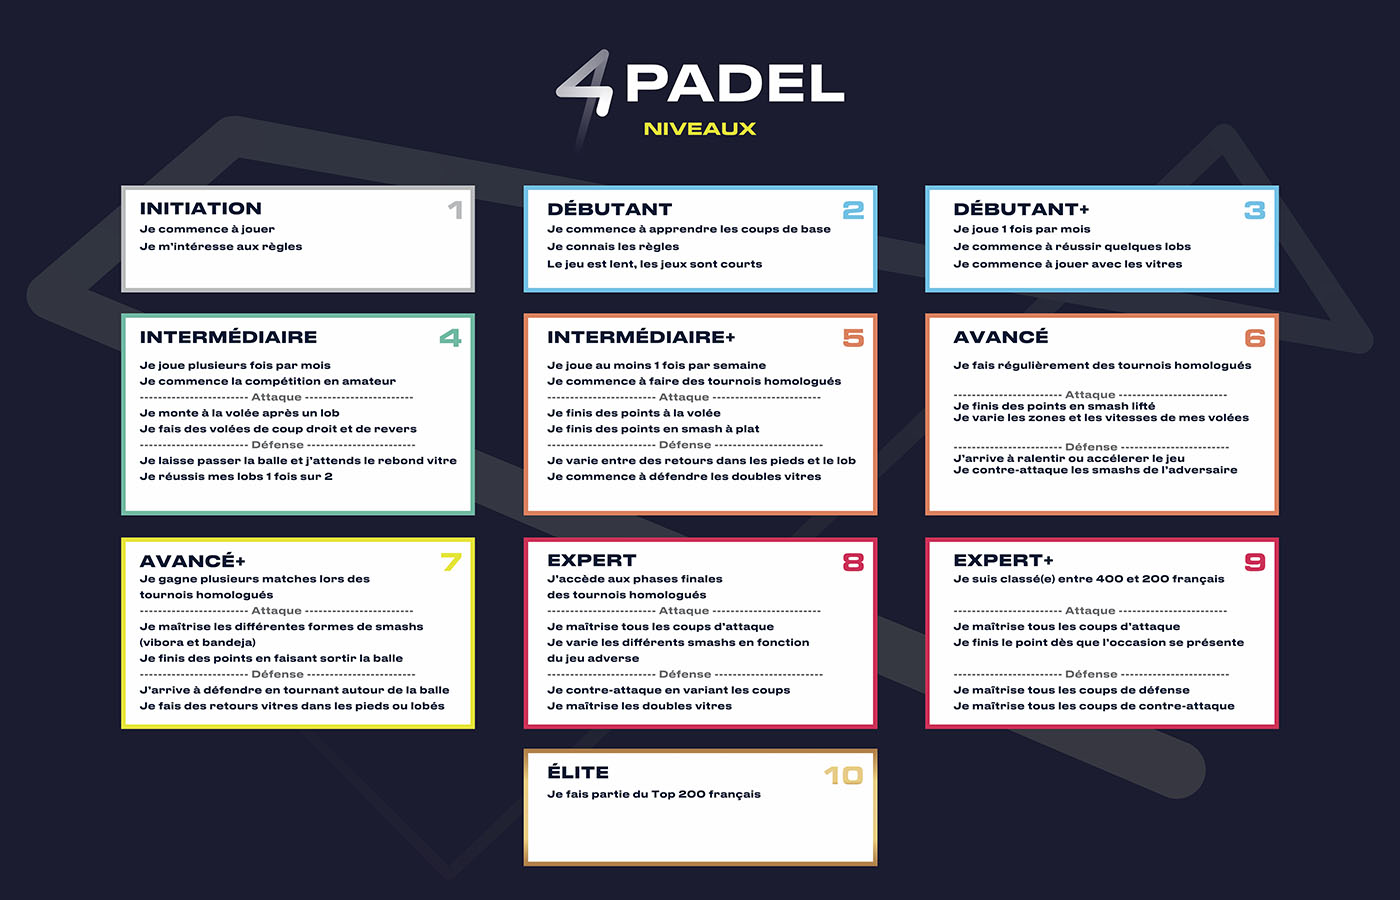 4PADEL News revisite le tableau des niveaux de Padel Around